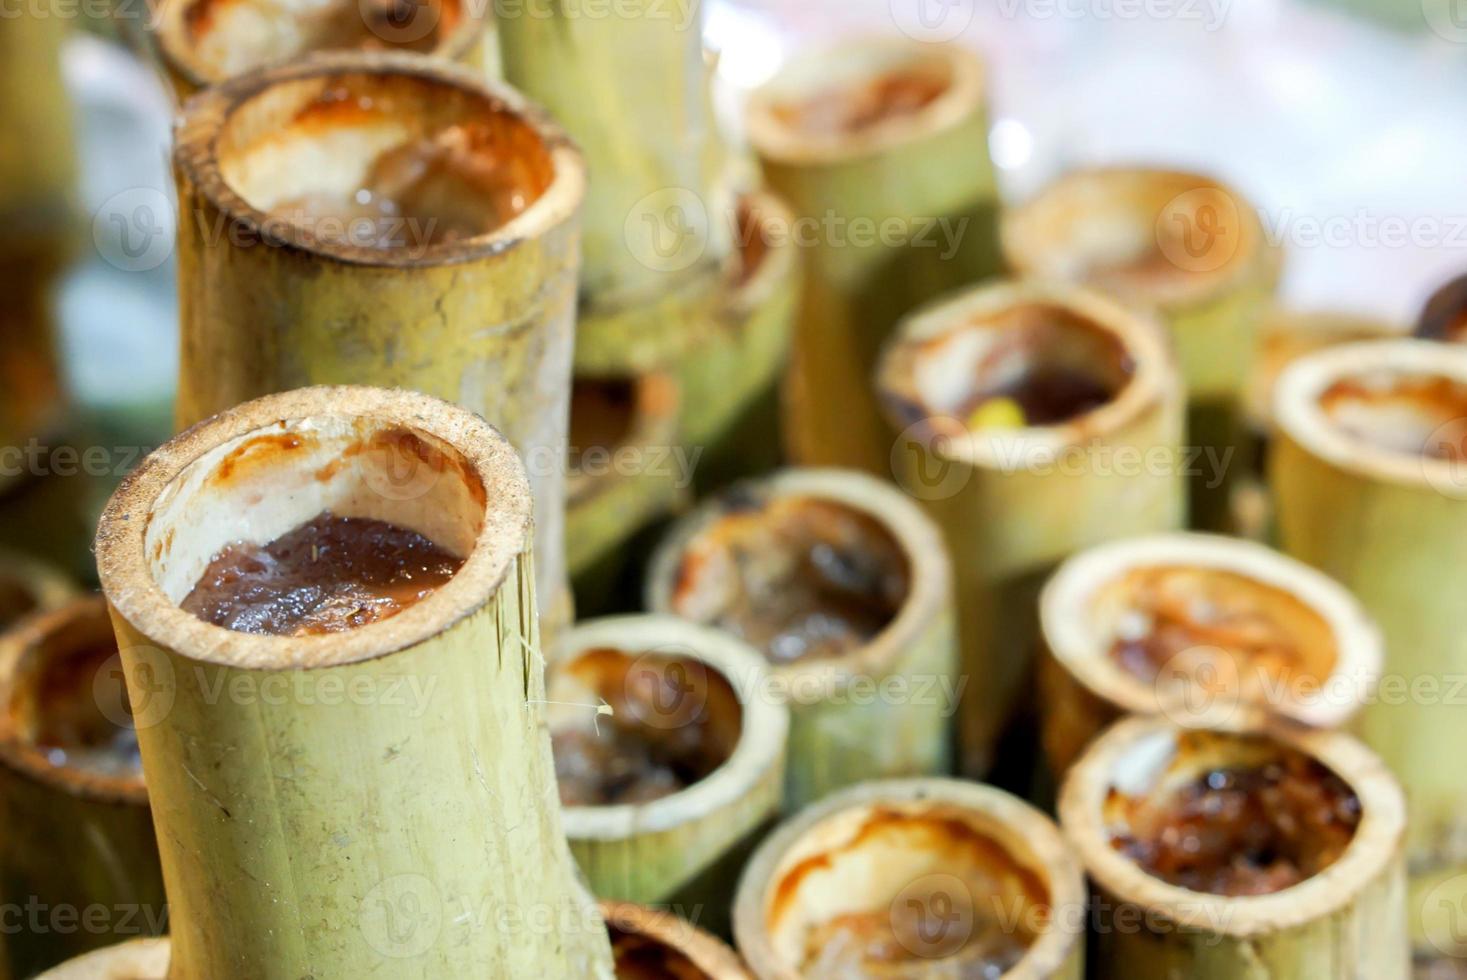 thai efterrätt. tillverkad förbi bränt klibbig ris med ljuv kokos mjölk och sätta ångad gingko nöt eller ångad taro på topp i bambu fogar. foto